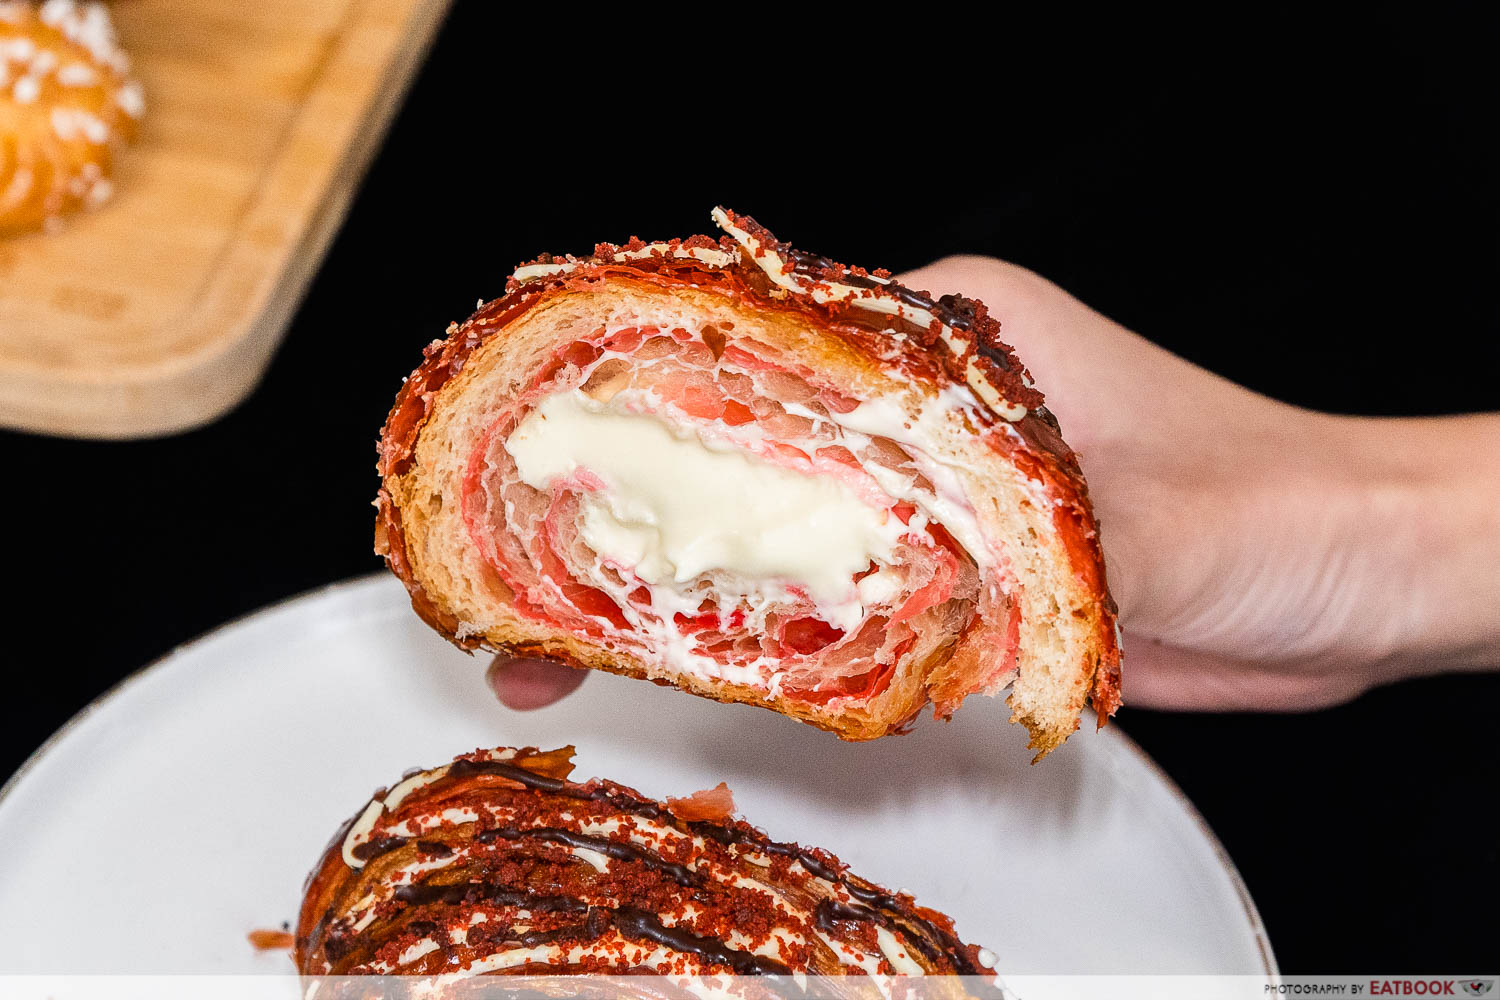 konditori artisan bakes red velvet croissant cross section